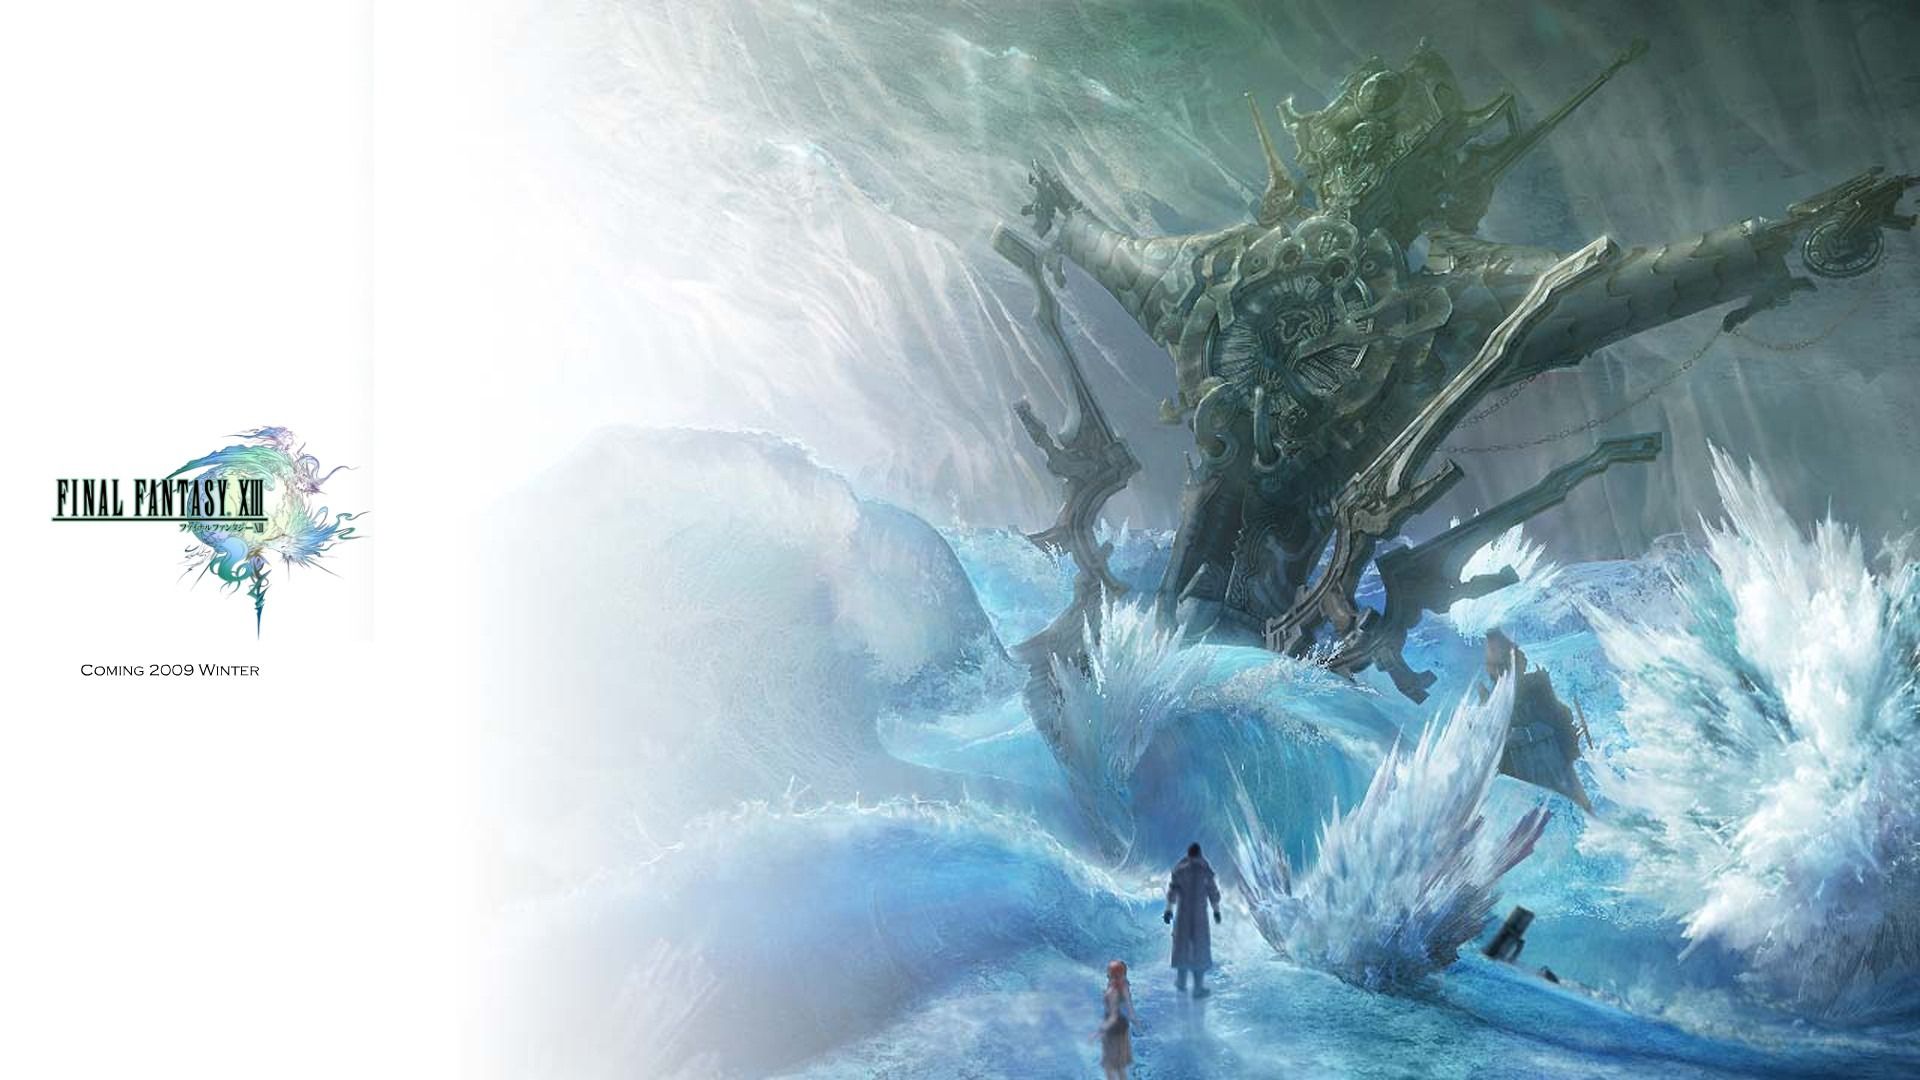 Final Fantasy Xi Wallpapers Wallpaper Cave